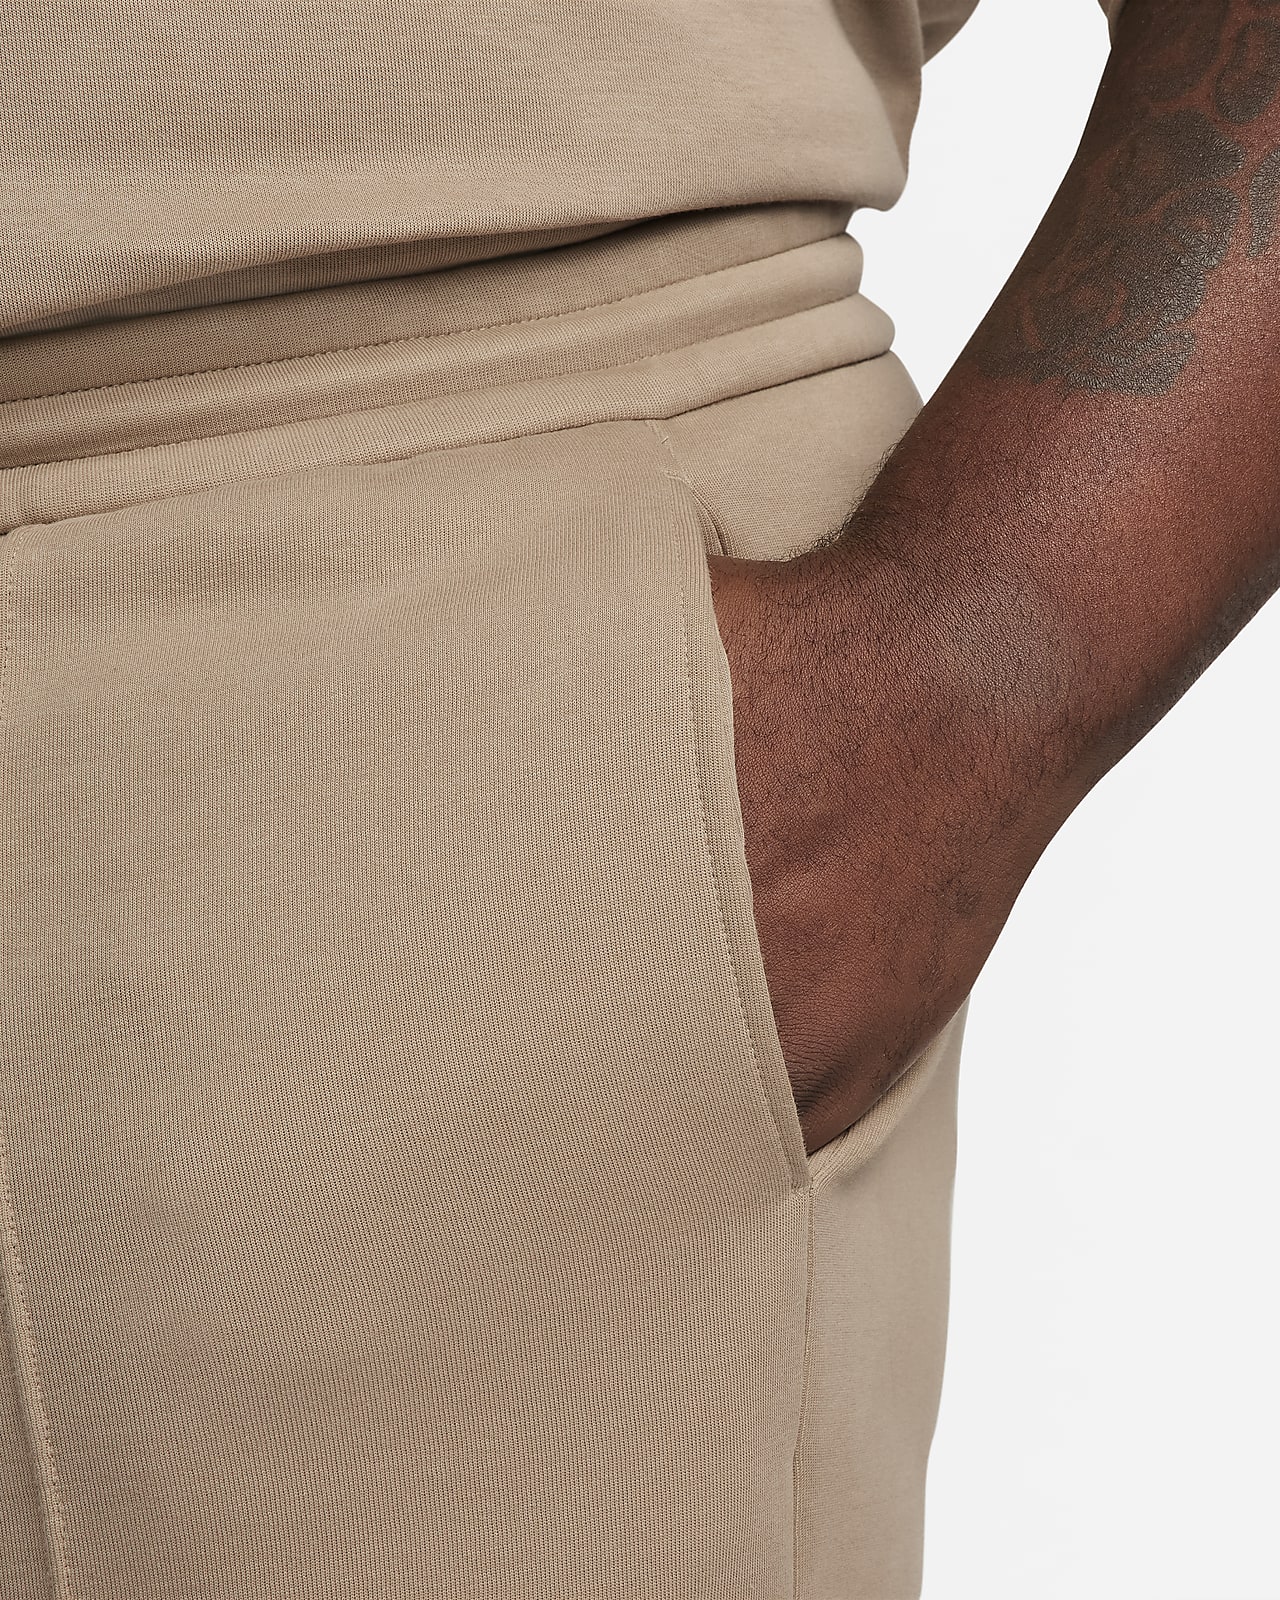 Nike Sportswear Tech Fleece Casual Sports Long Pants Black 805163-010 -  KICKS CREW